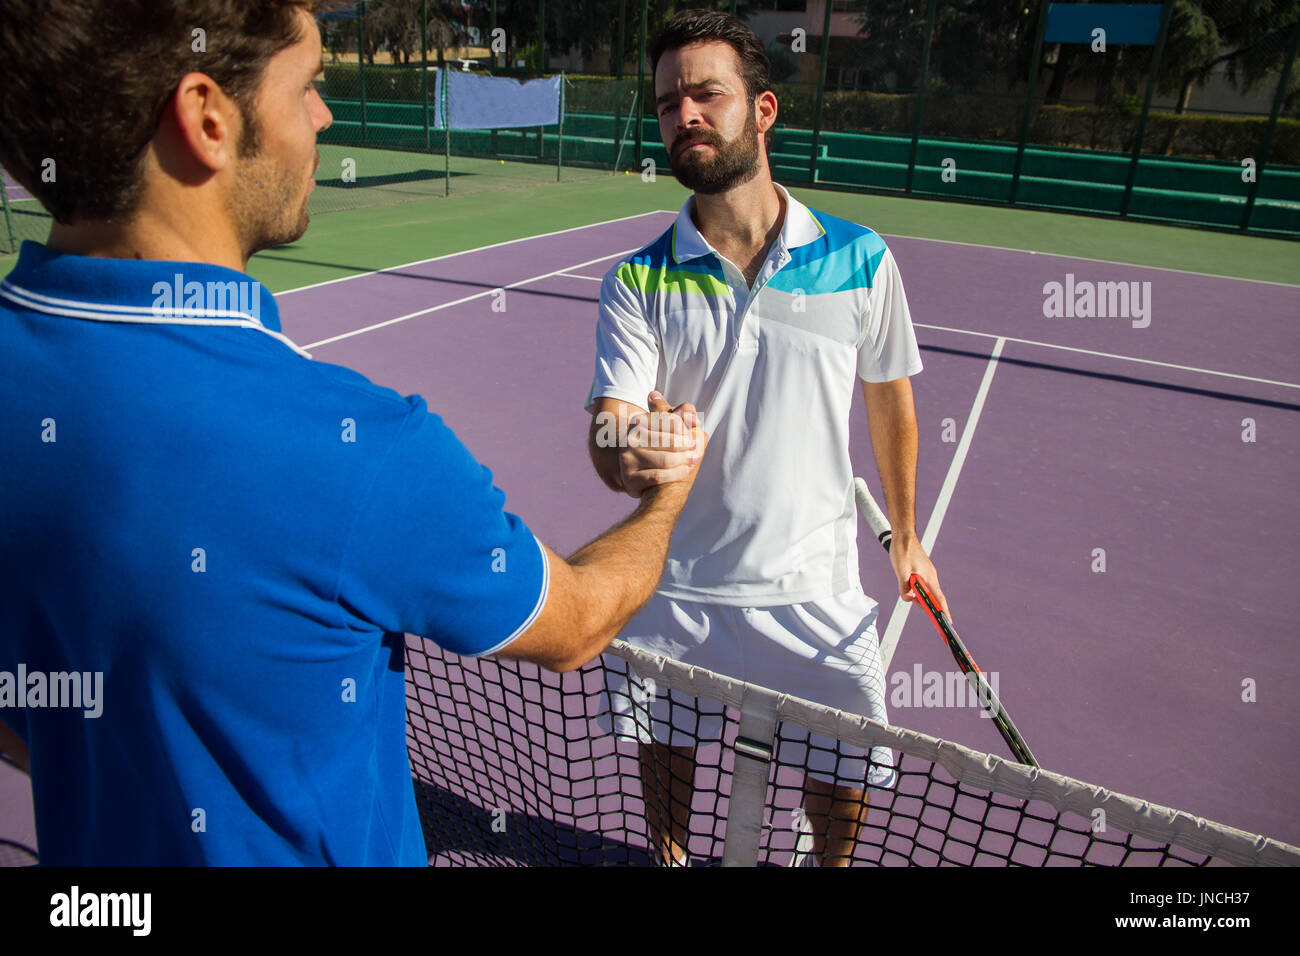 Deux hommes, joueurs professionnels de tennis se serrent la main avant et  après le match de tennis. L'un d'elles a le visage de la colère Photo Stock  - Alamy